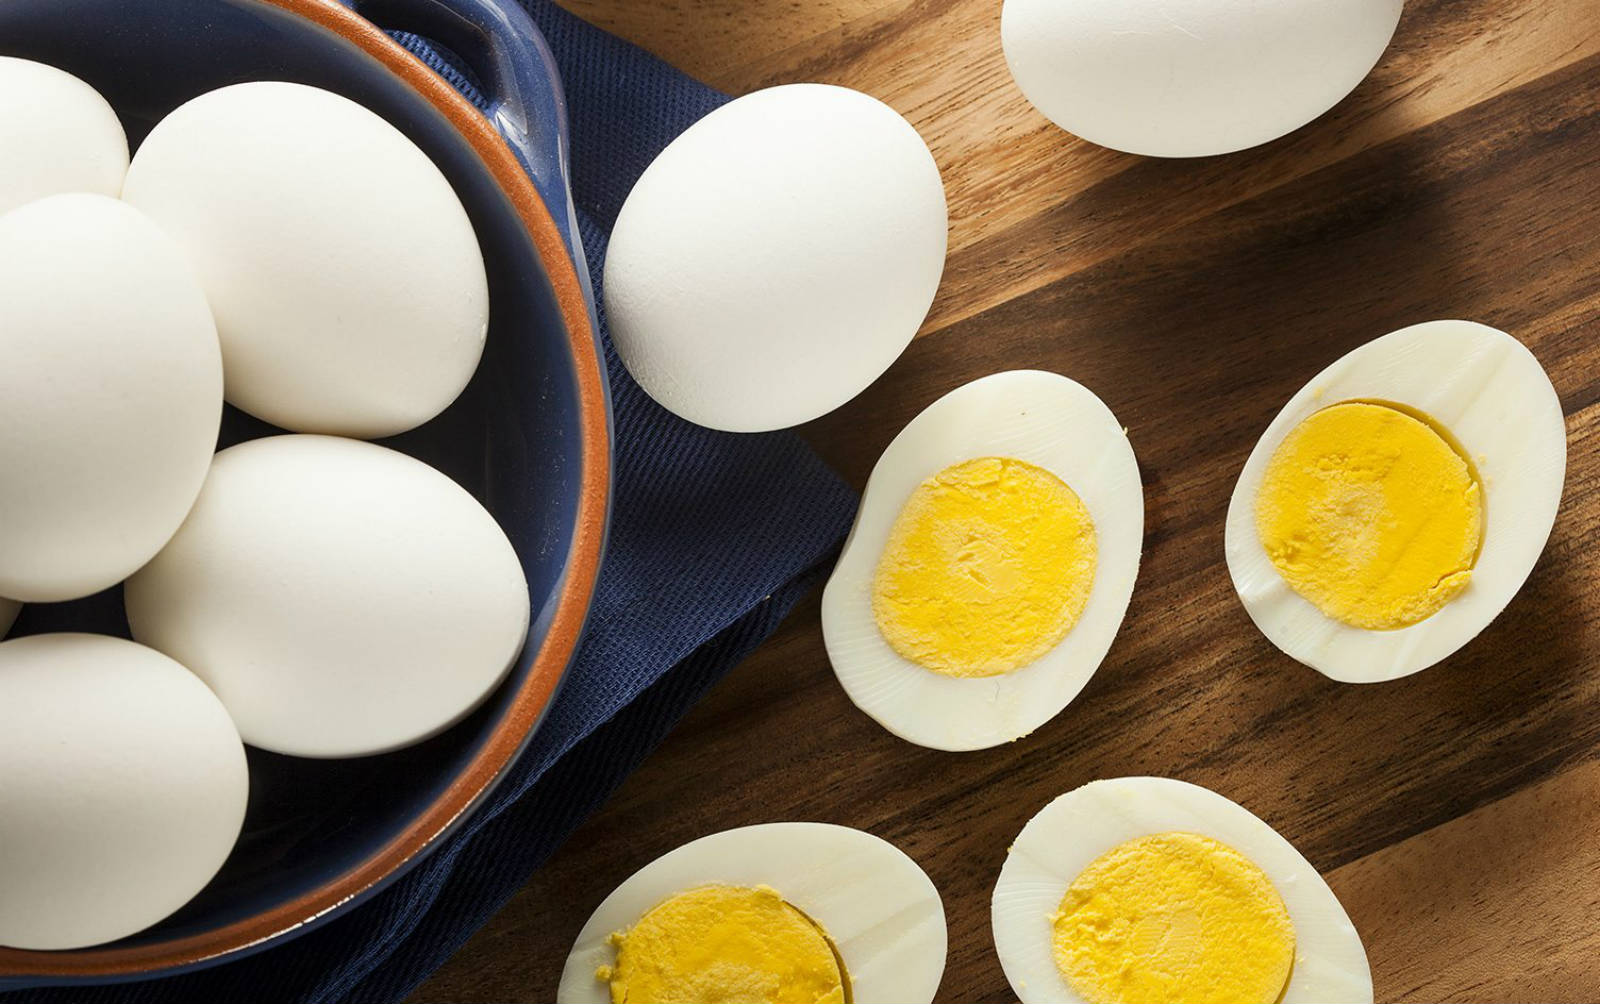 كم عدد البيض الآمن لمرضى الكولسترول المستهلكة كل يوم؟